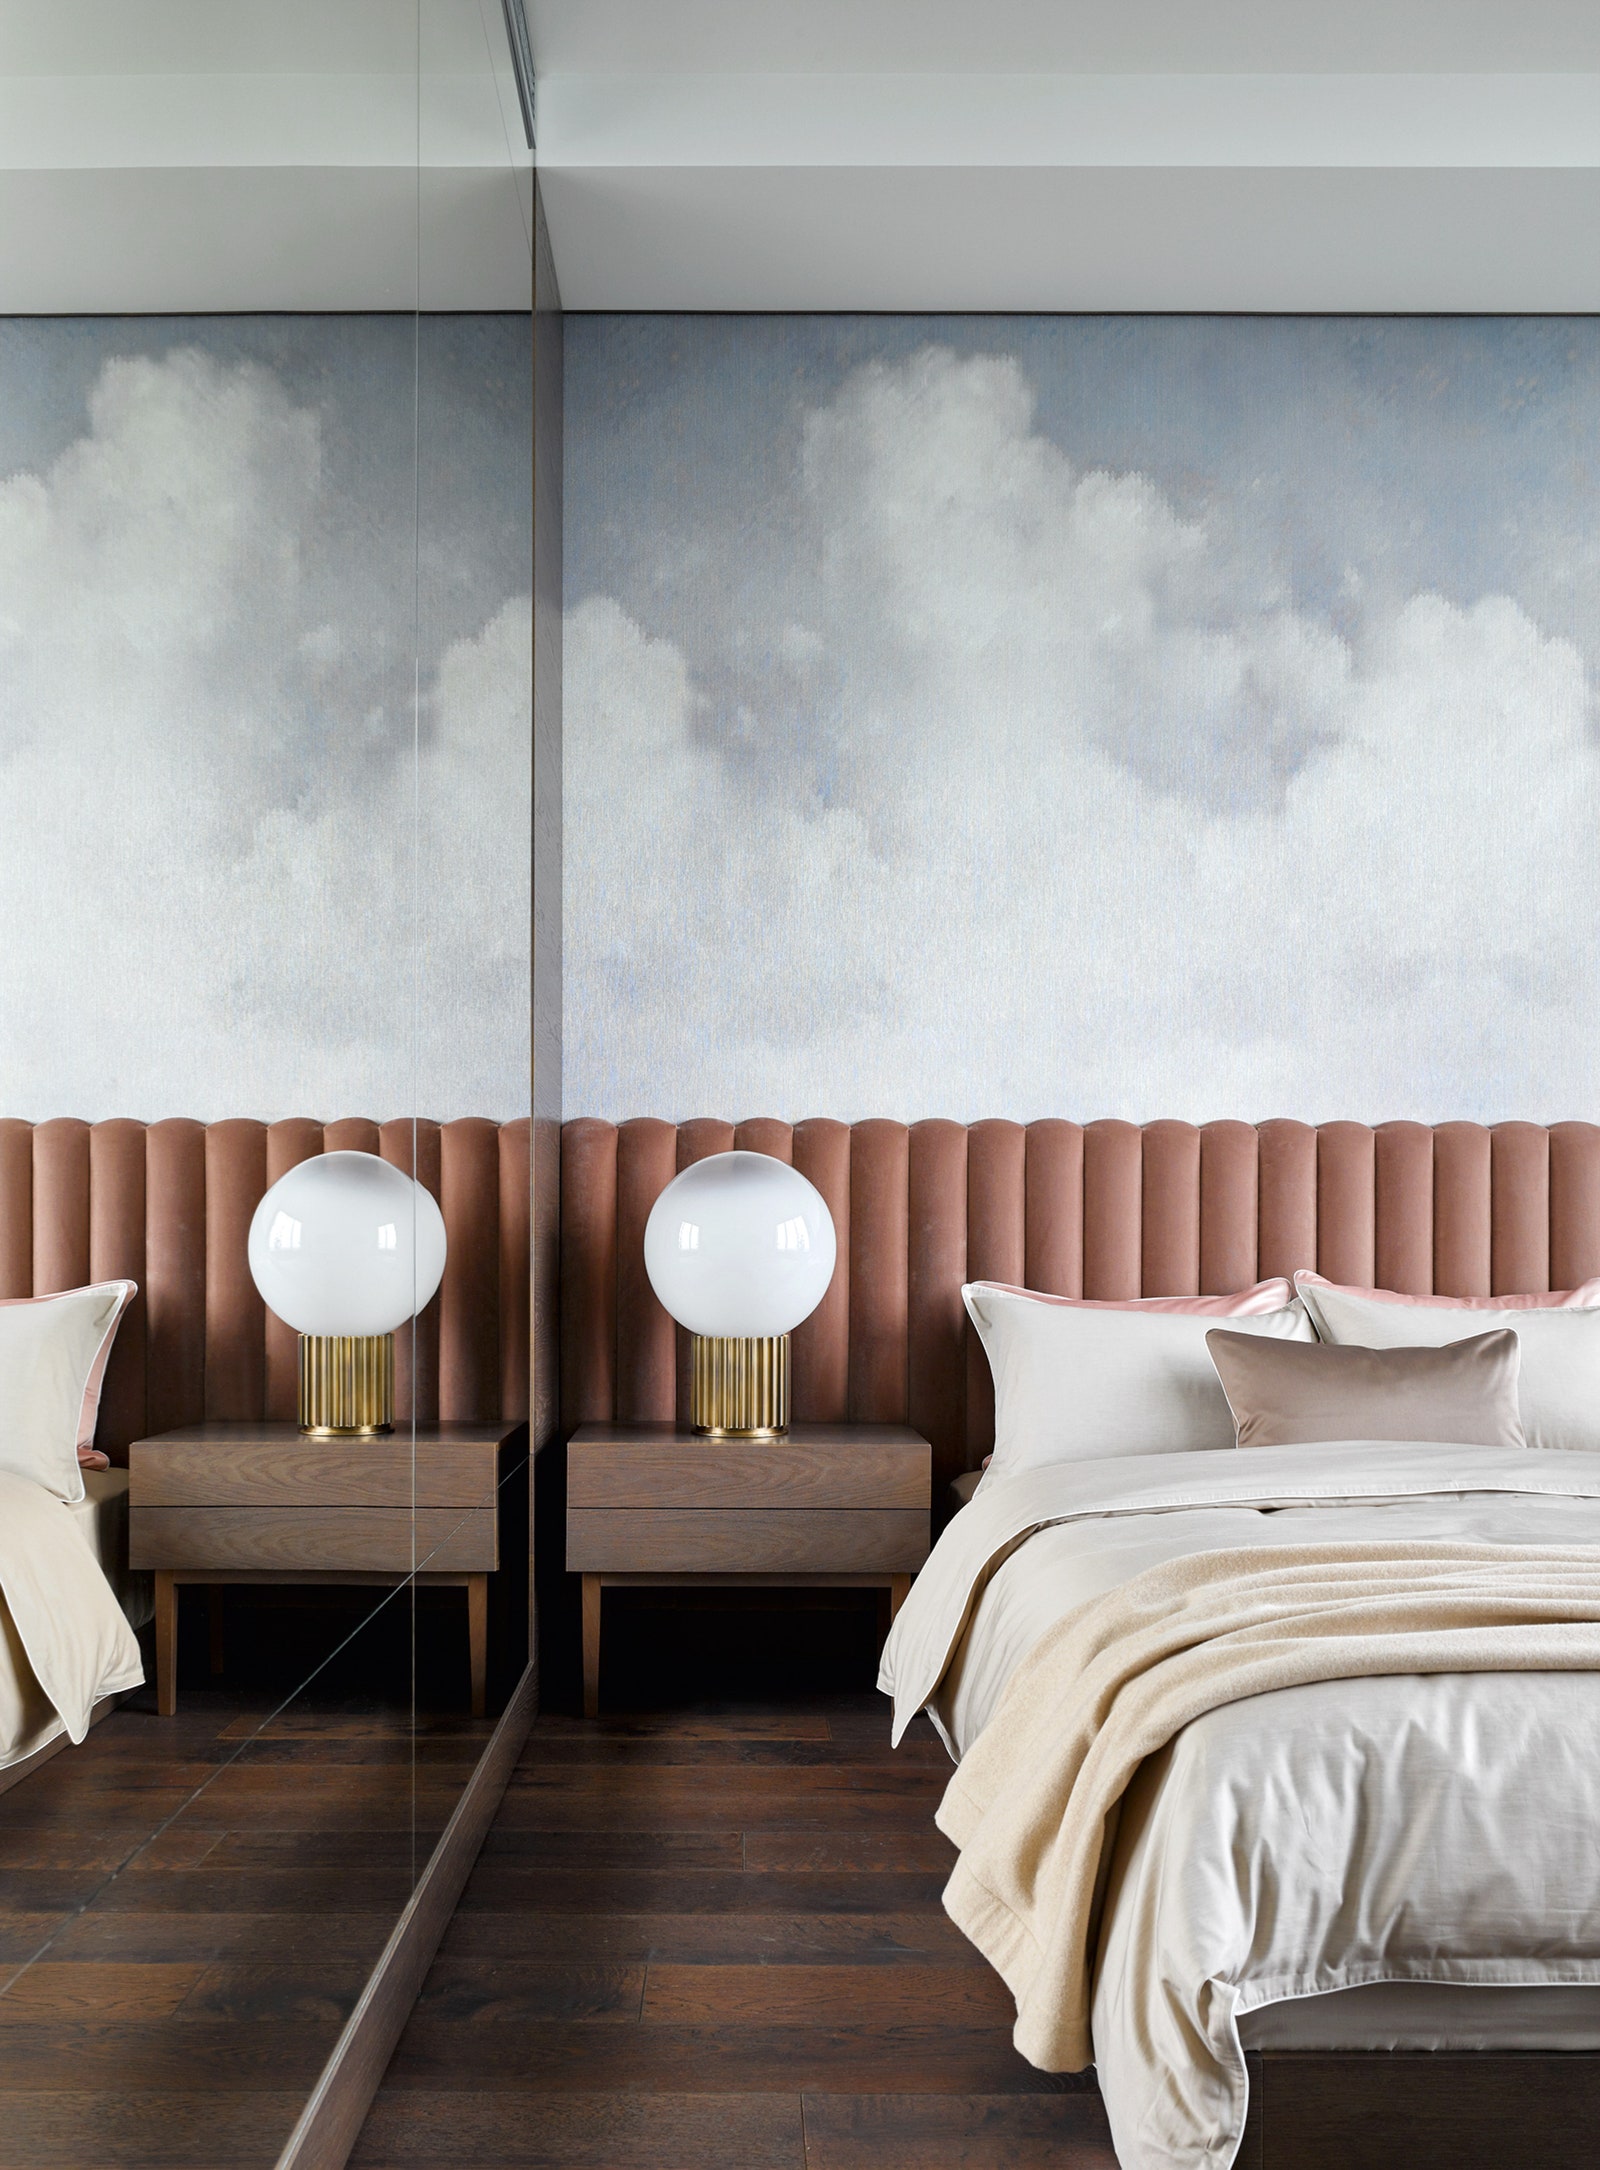 Детская комната. Изголовье кровати сделано по эскизам дизайнеров обои Pierre Frey постельное белье AtelierTati.